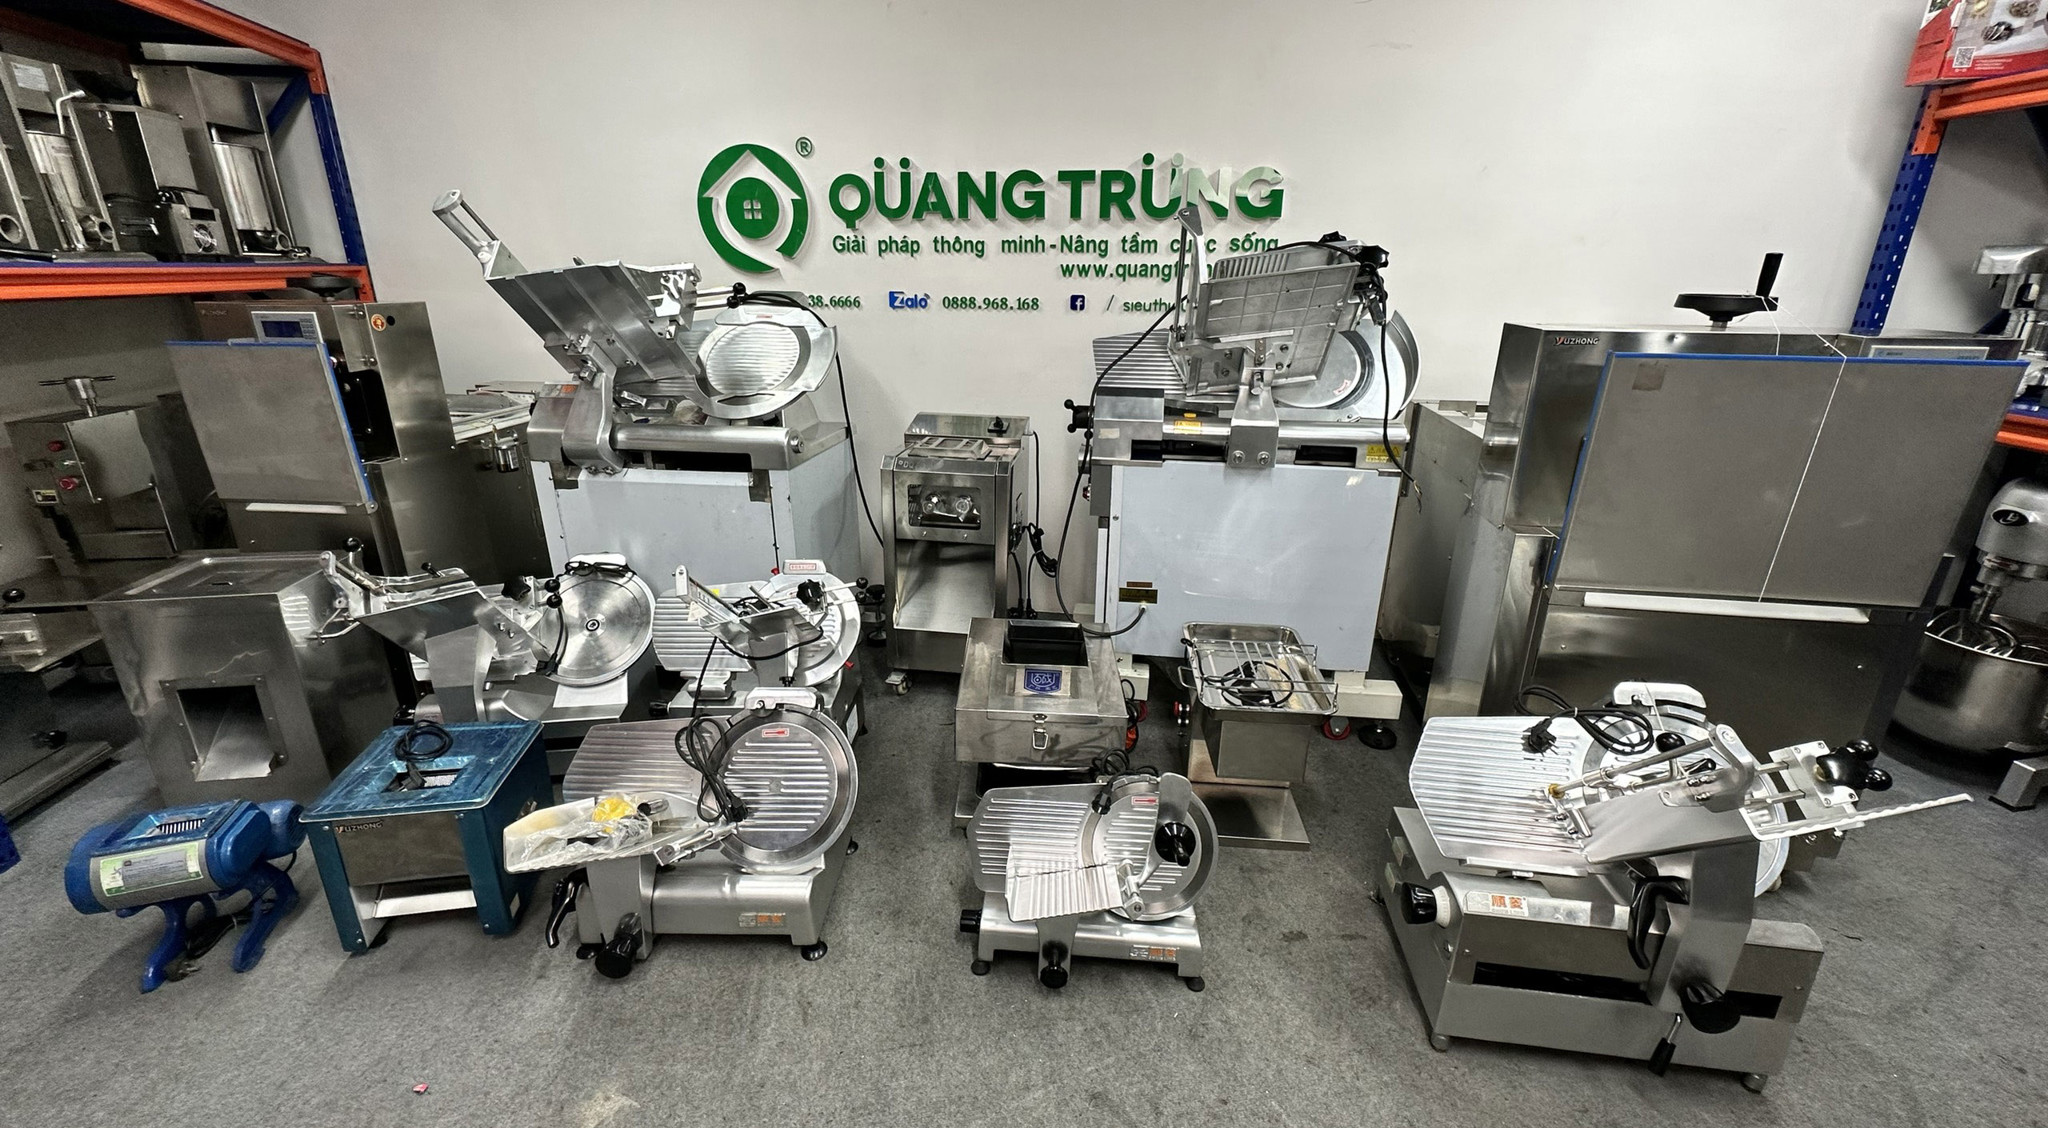 Bán máy thái thịt ở Hà Nội - Giải pháp tối ưu cho việc chế biến thực phẩm